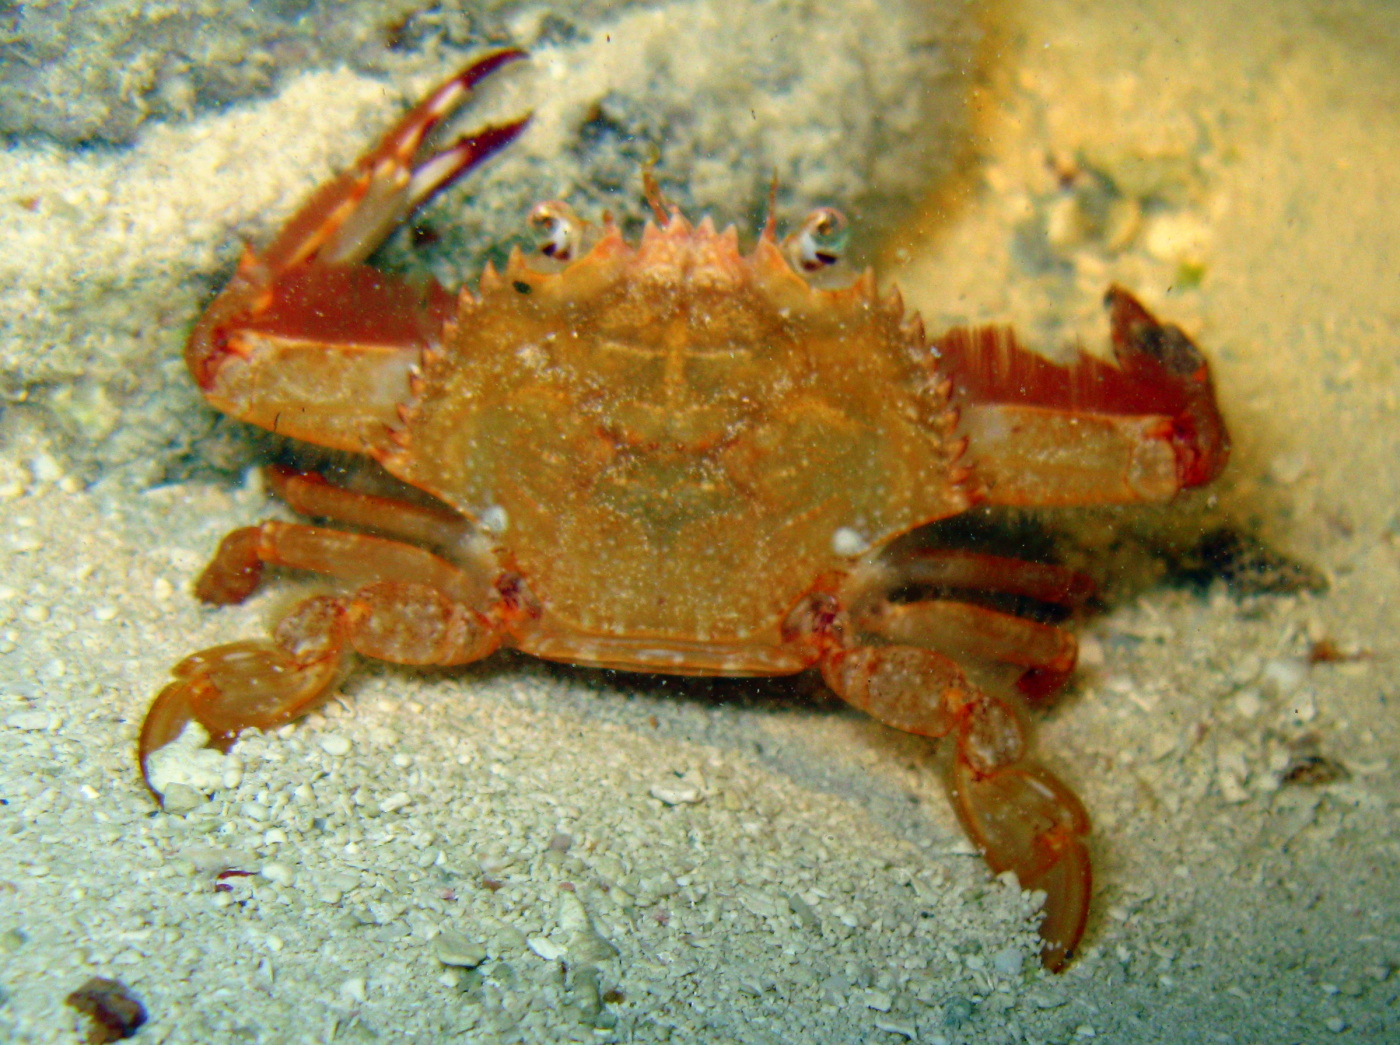 Redhair Swimming Crab - Achelous ordwayi